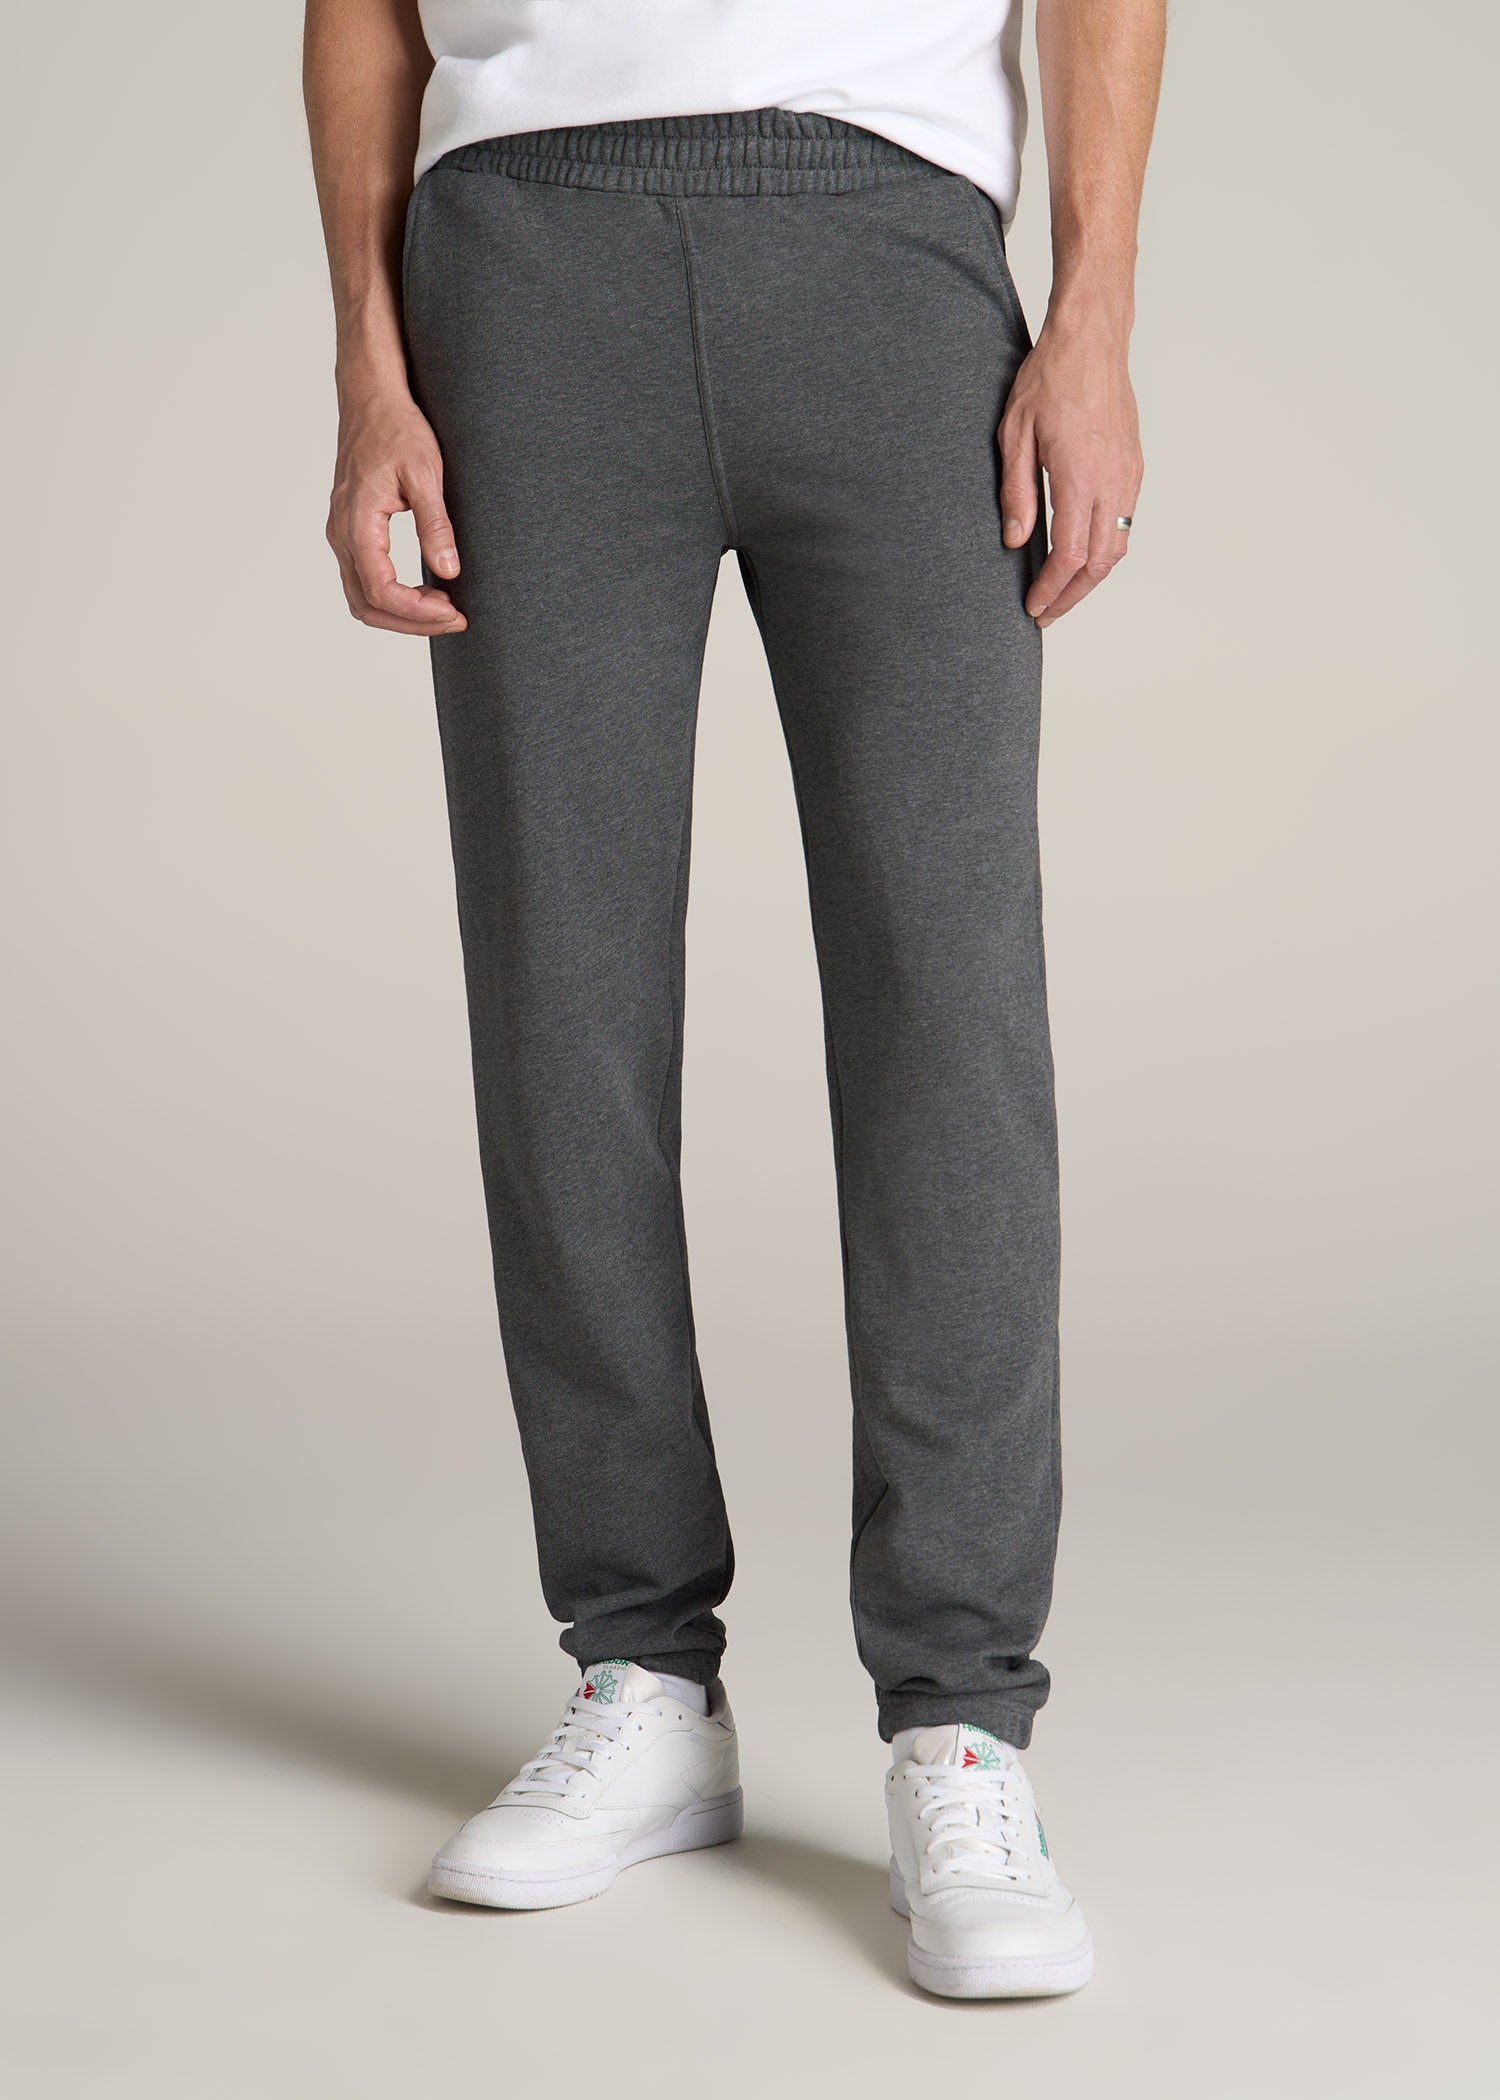 Grey Sweatpants for Men